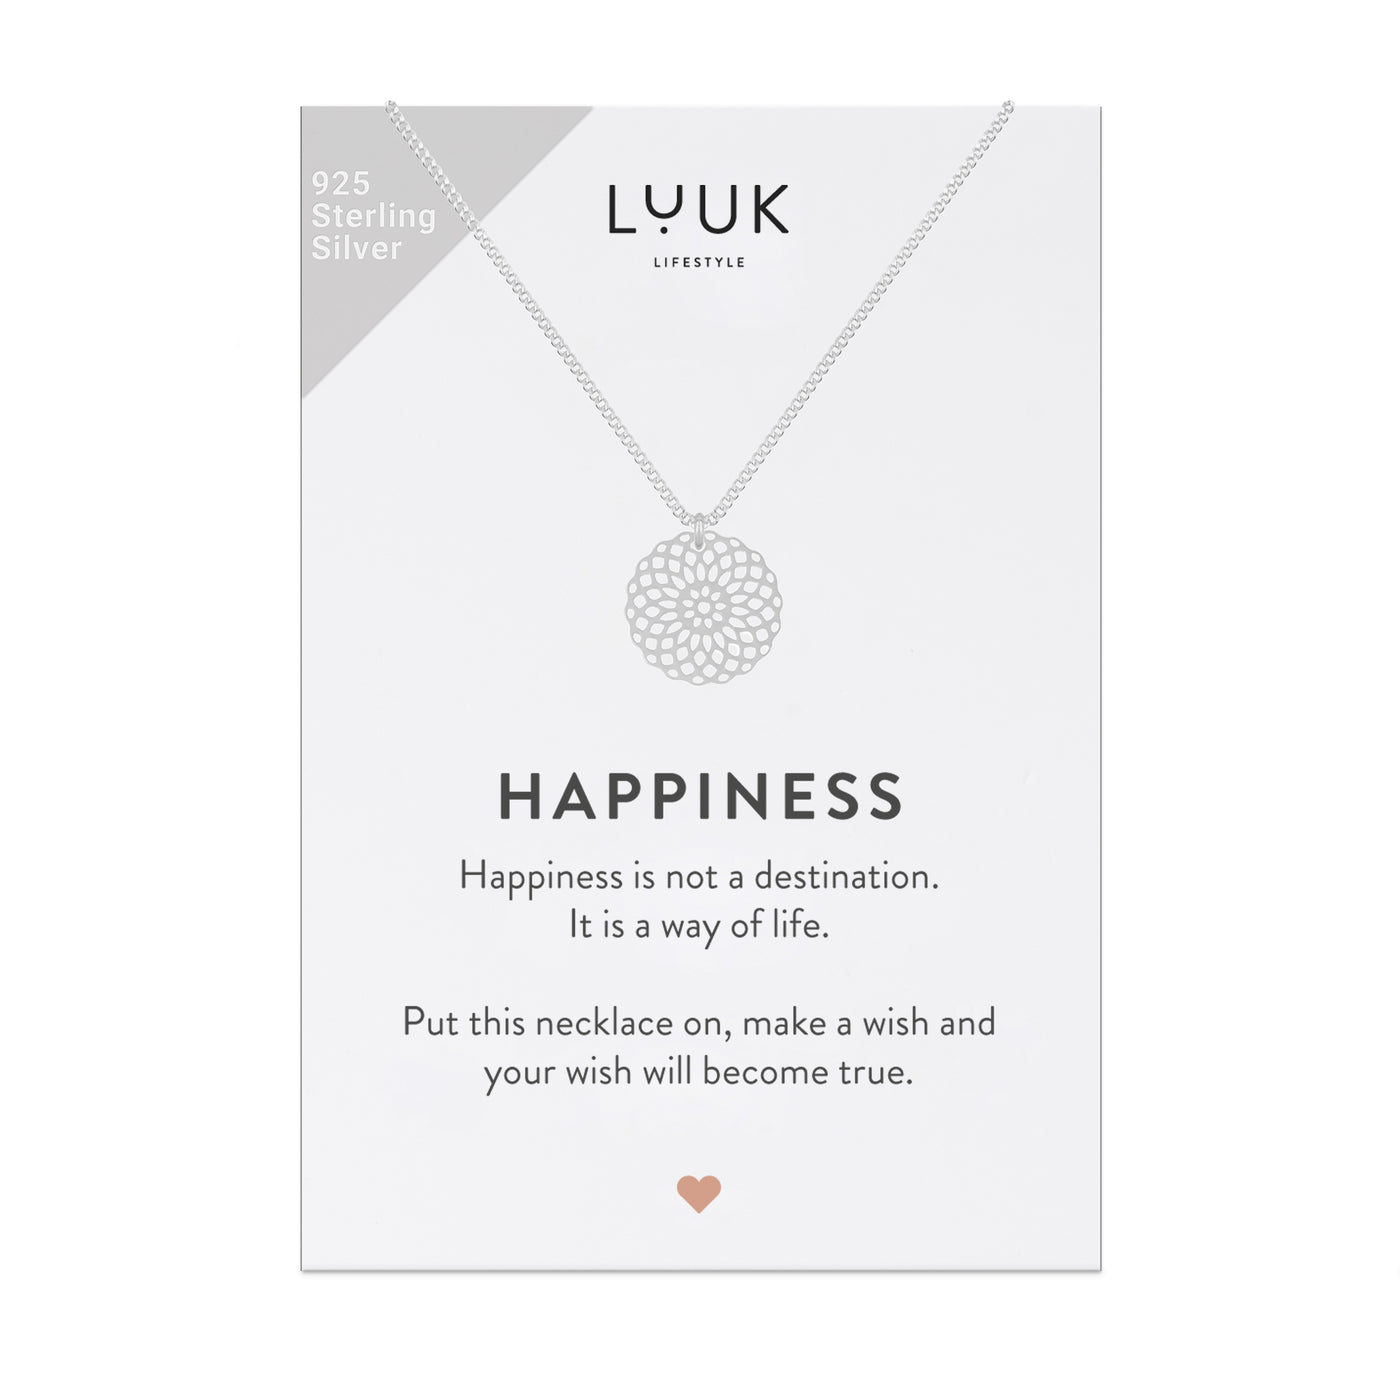 Halskette mit großem Mandala Anhänger in 925 sterlingsilber auf Happiness Spruchkarte von der Marke Luuk Lifestyle